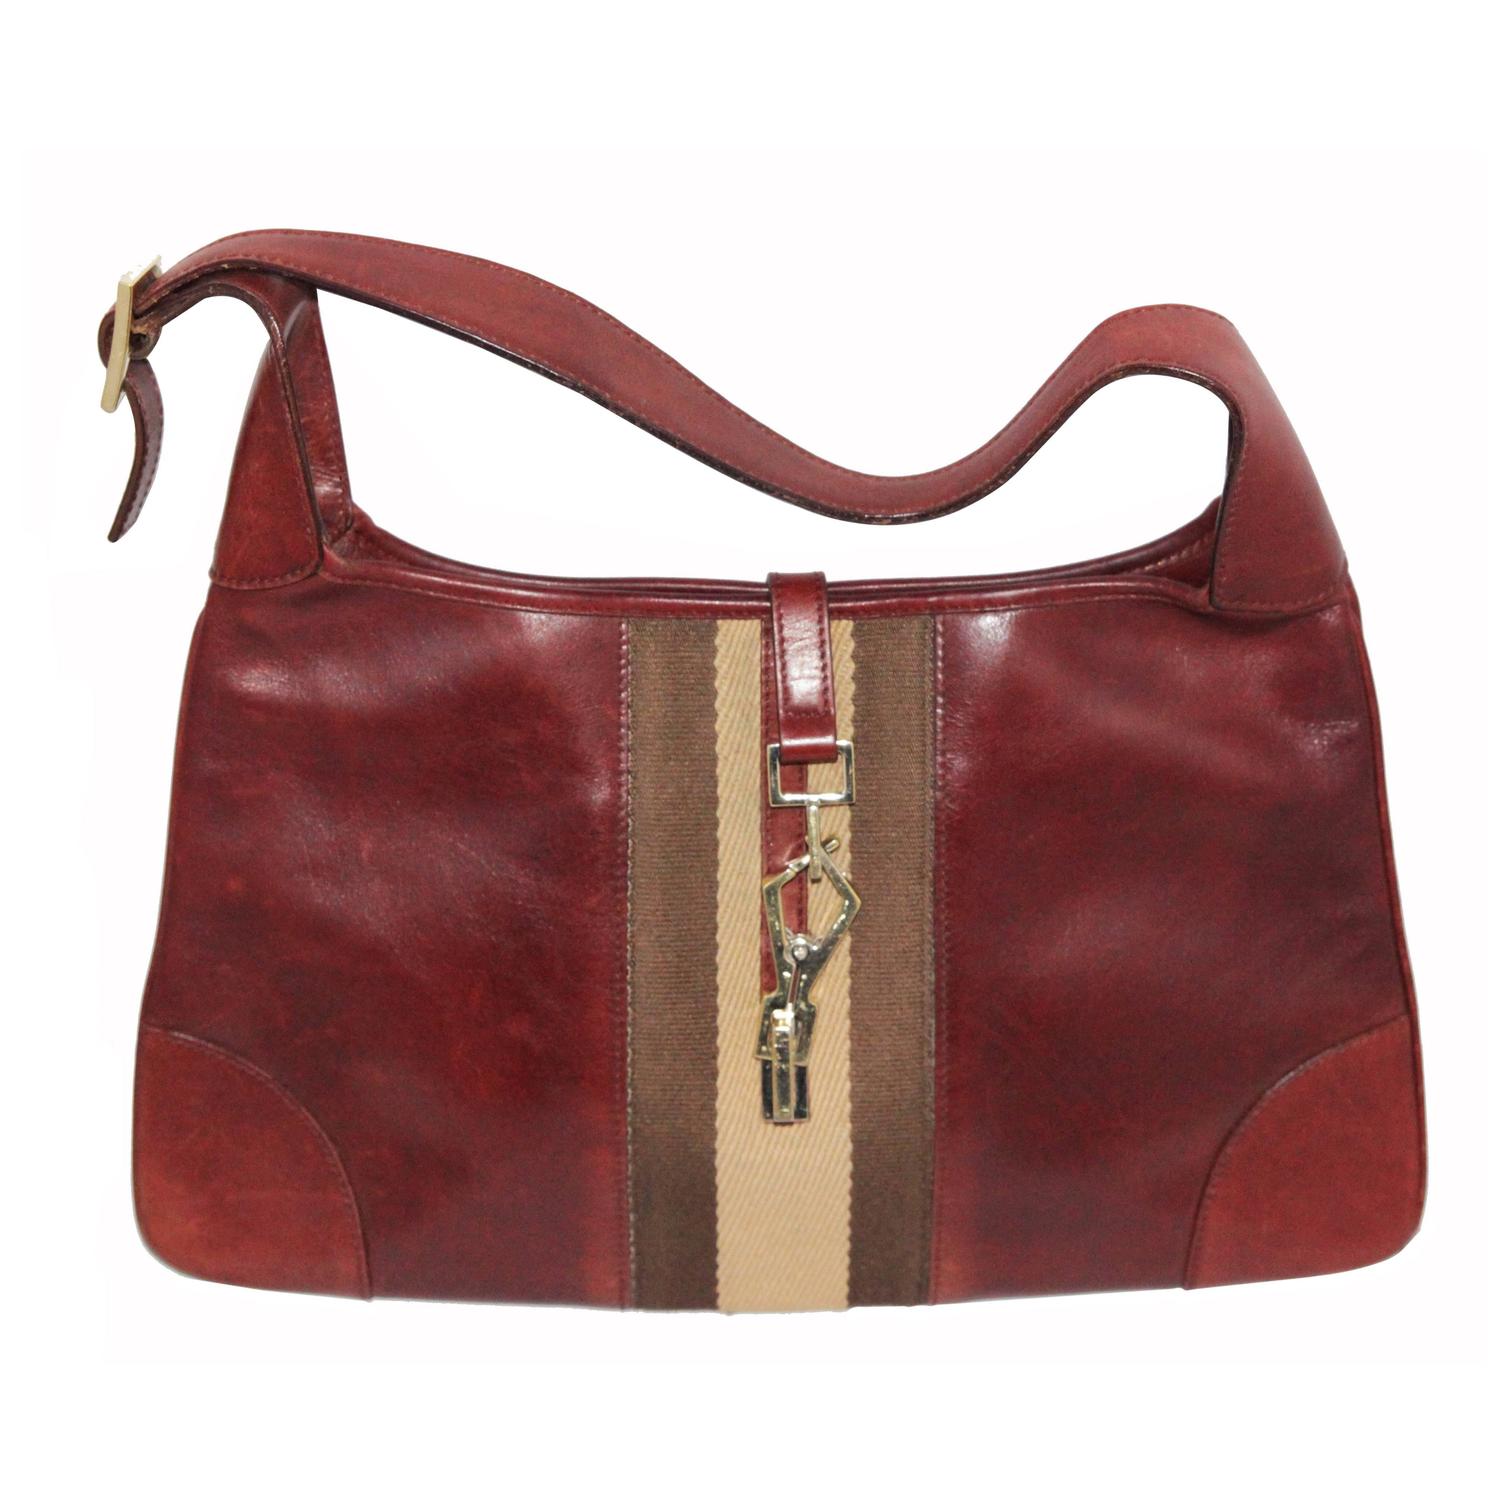 Gucci Vintage Jackie Handbag For Sale at 1stdibs